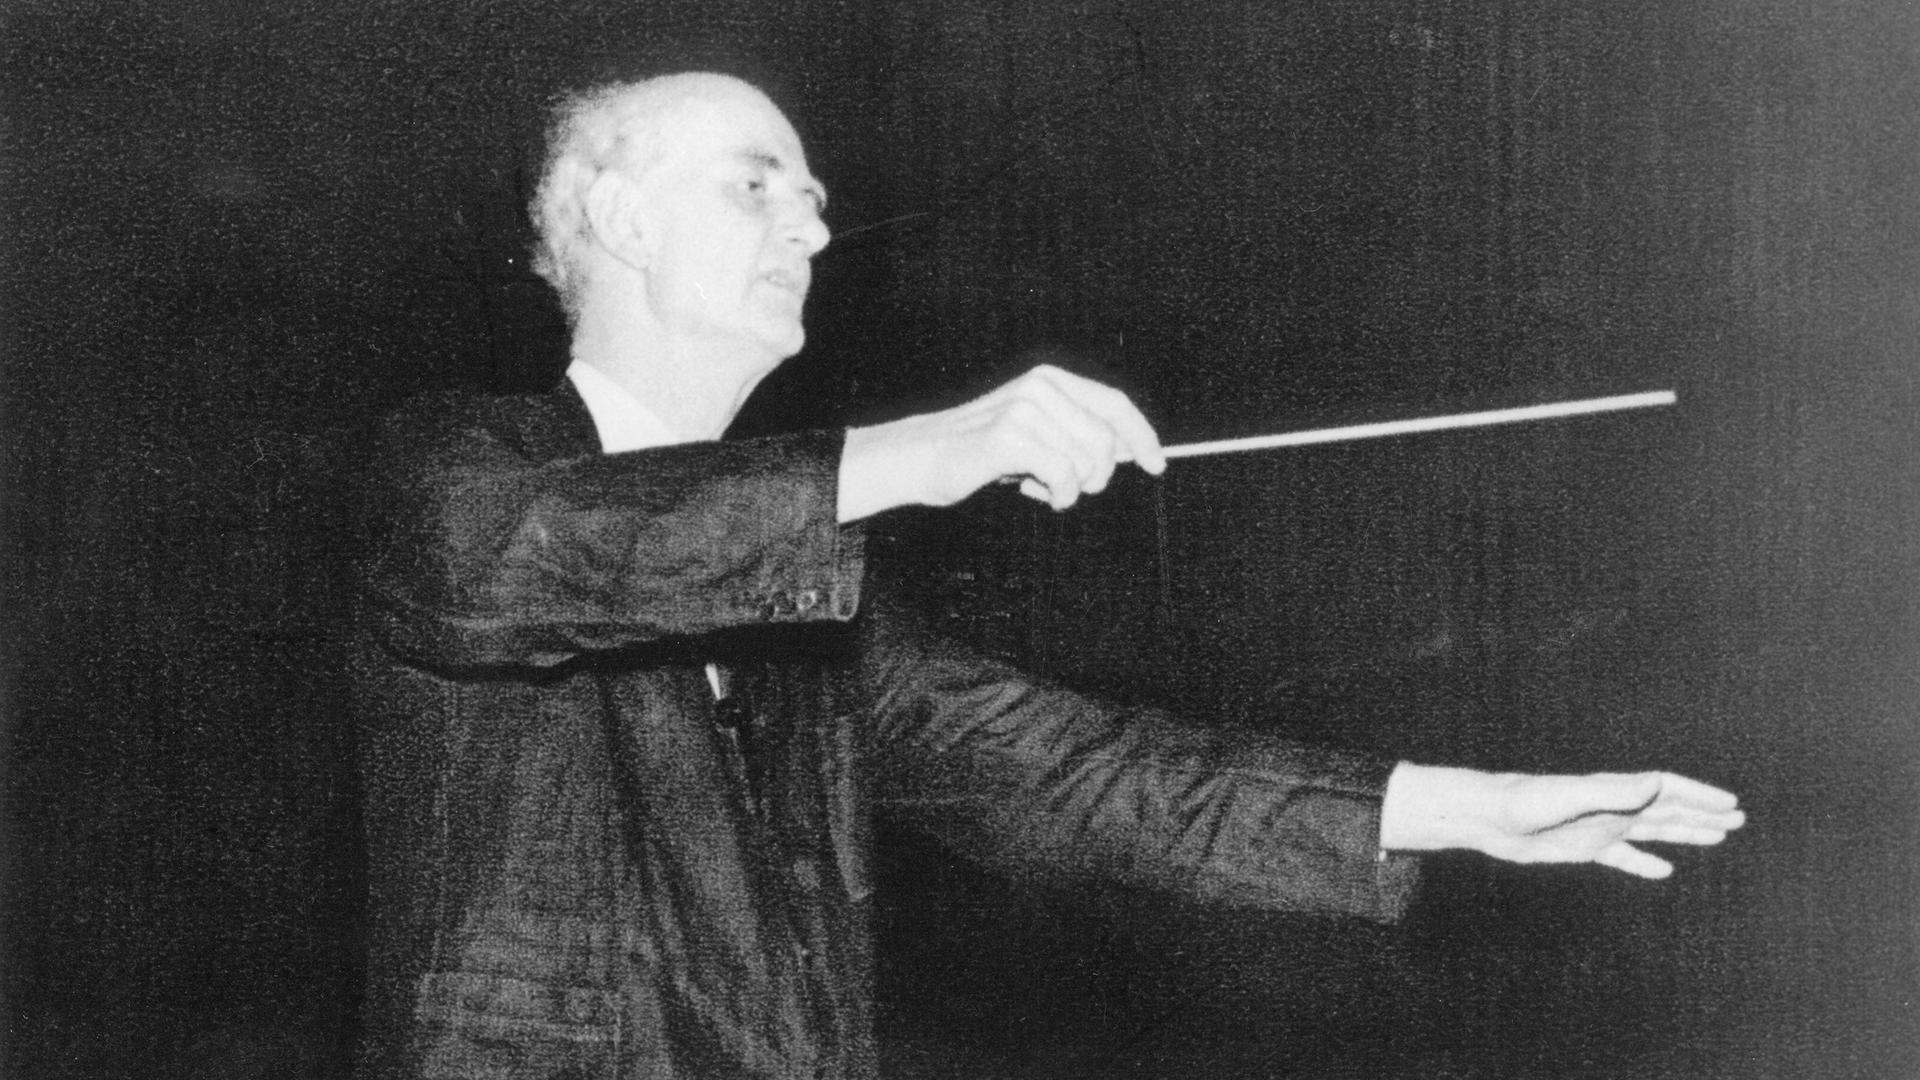 Der Dirigent Wilhelm Furtwängler während seiner Arbeit – aufgenommen um 1950 